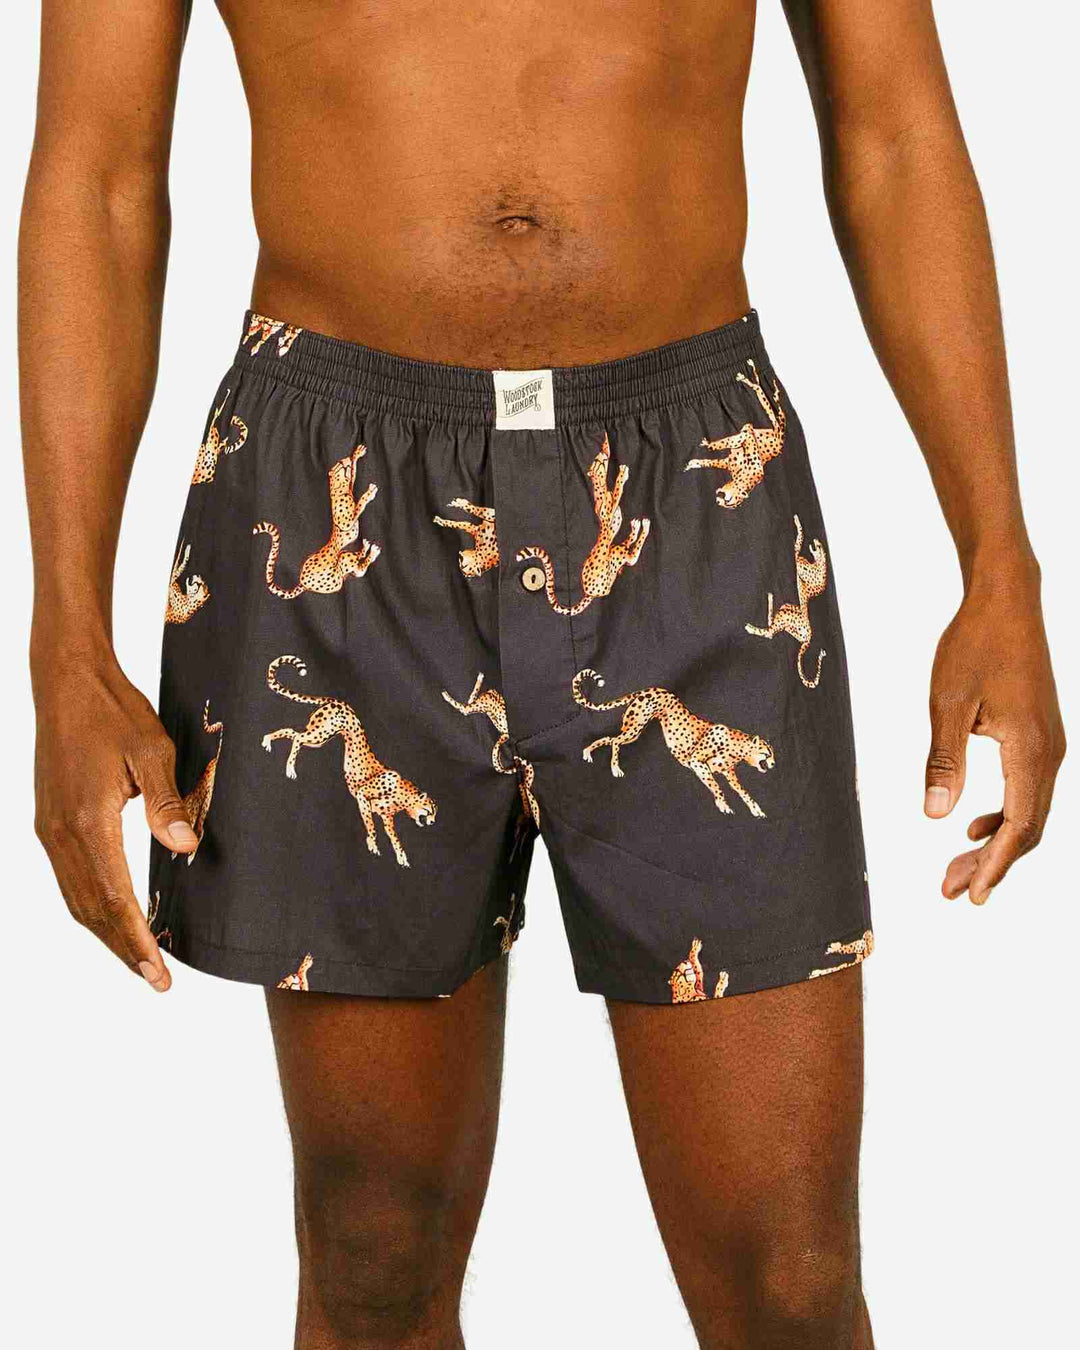 Men's boxer shorts - Jumping Cheetah